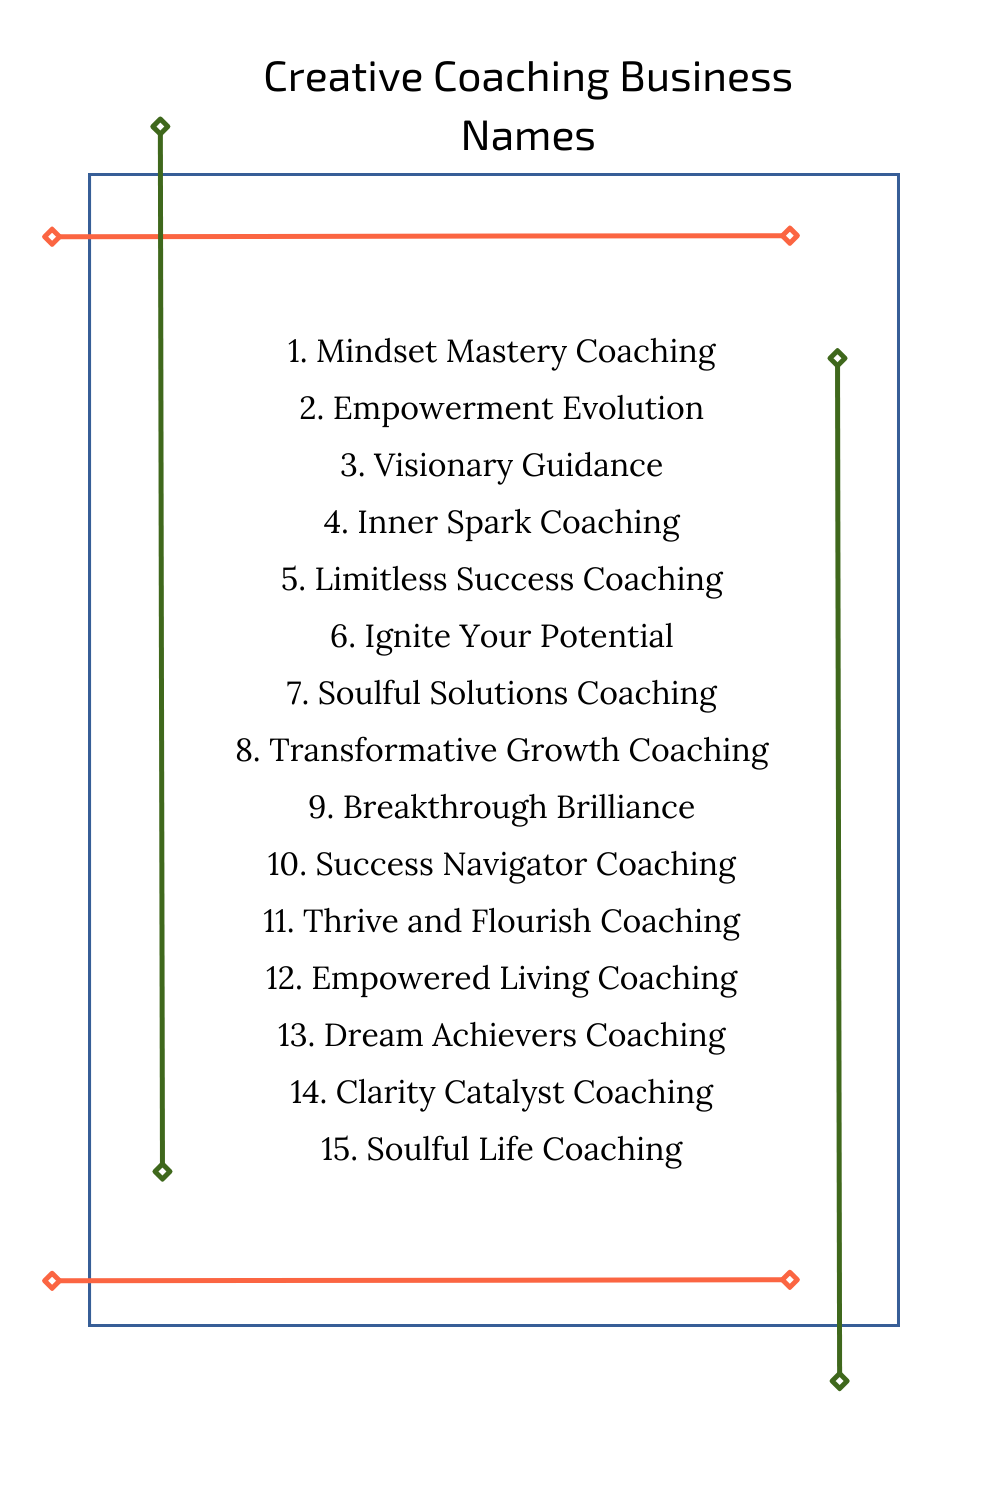 Creative Coaching Business Names